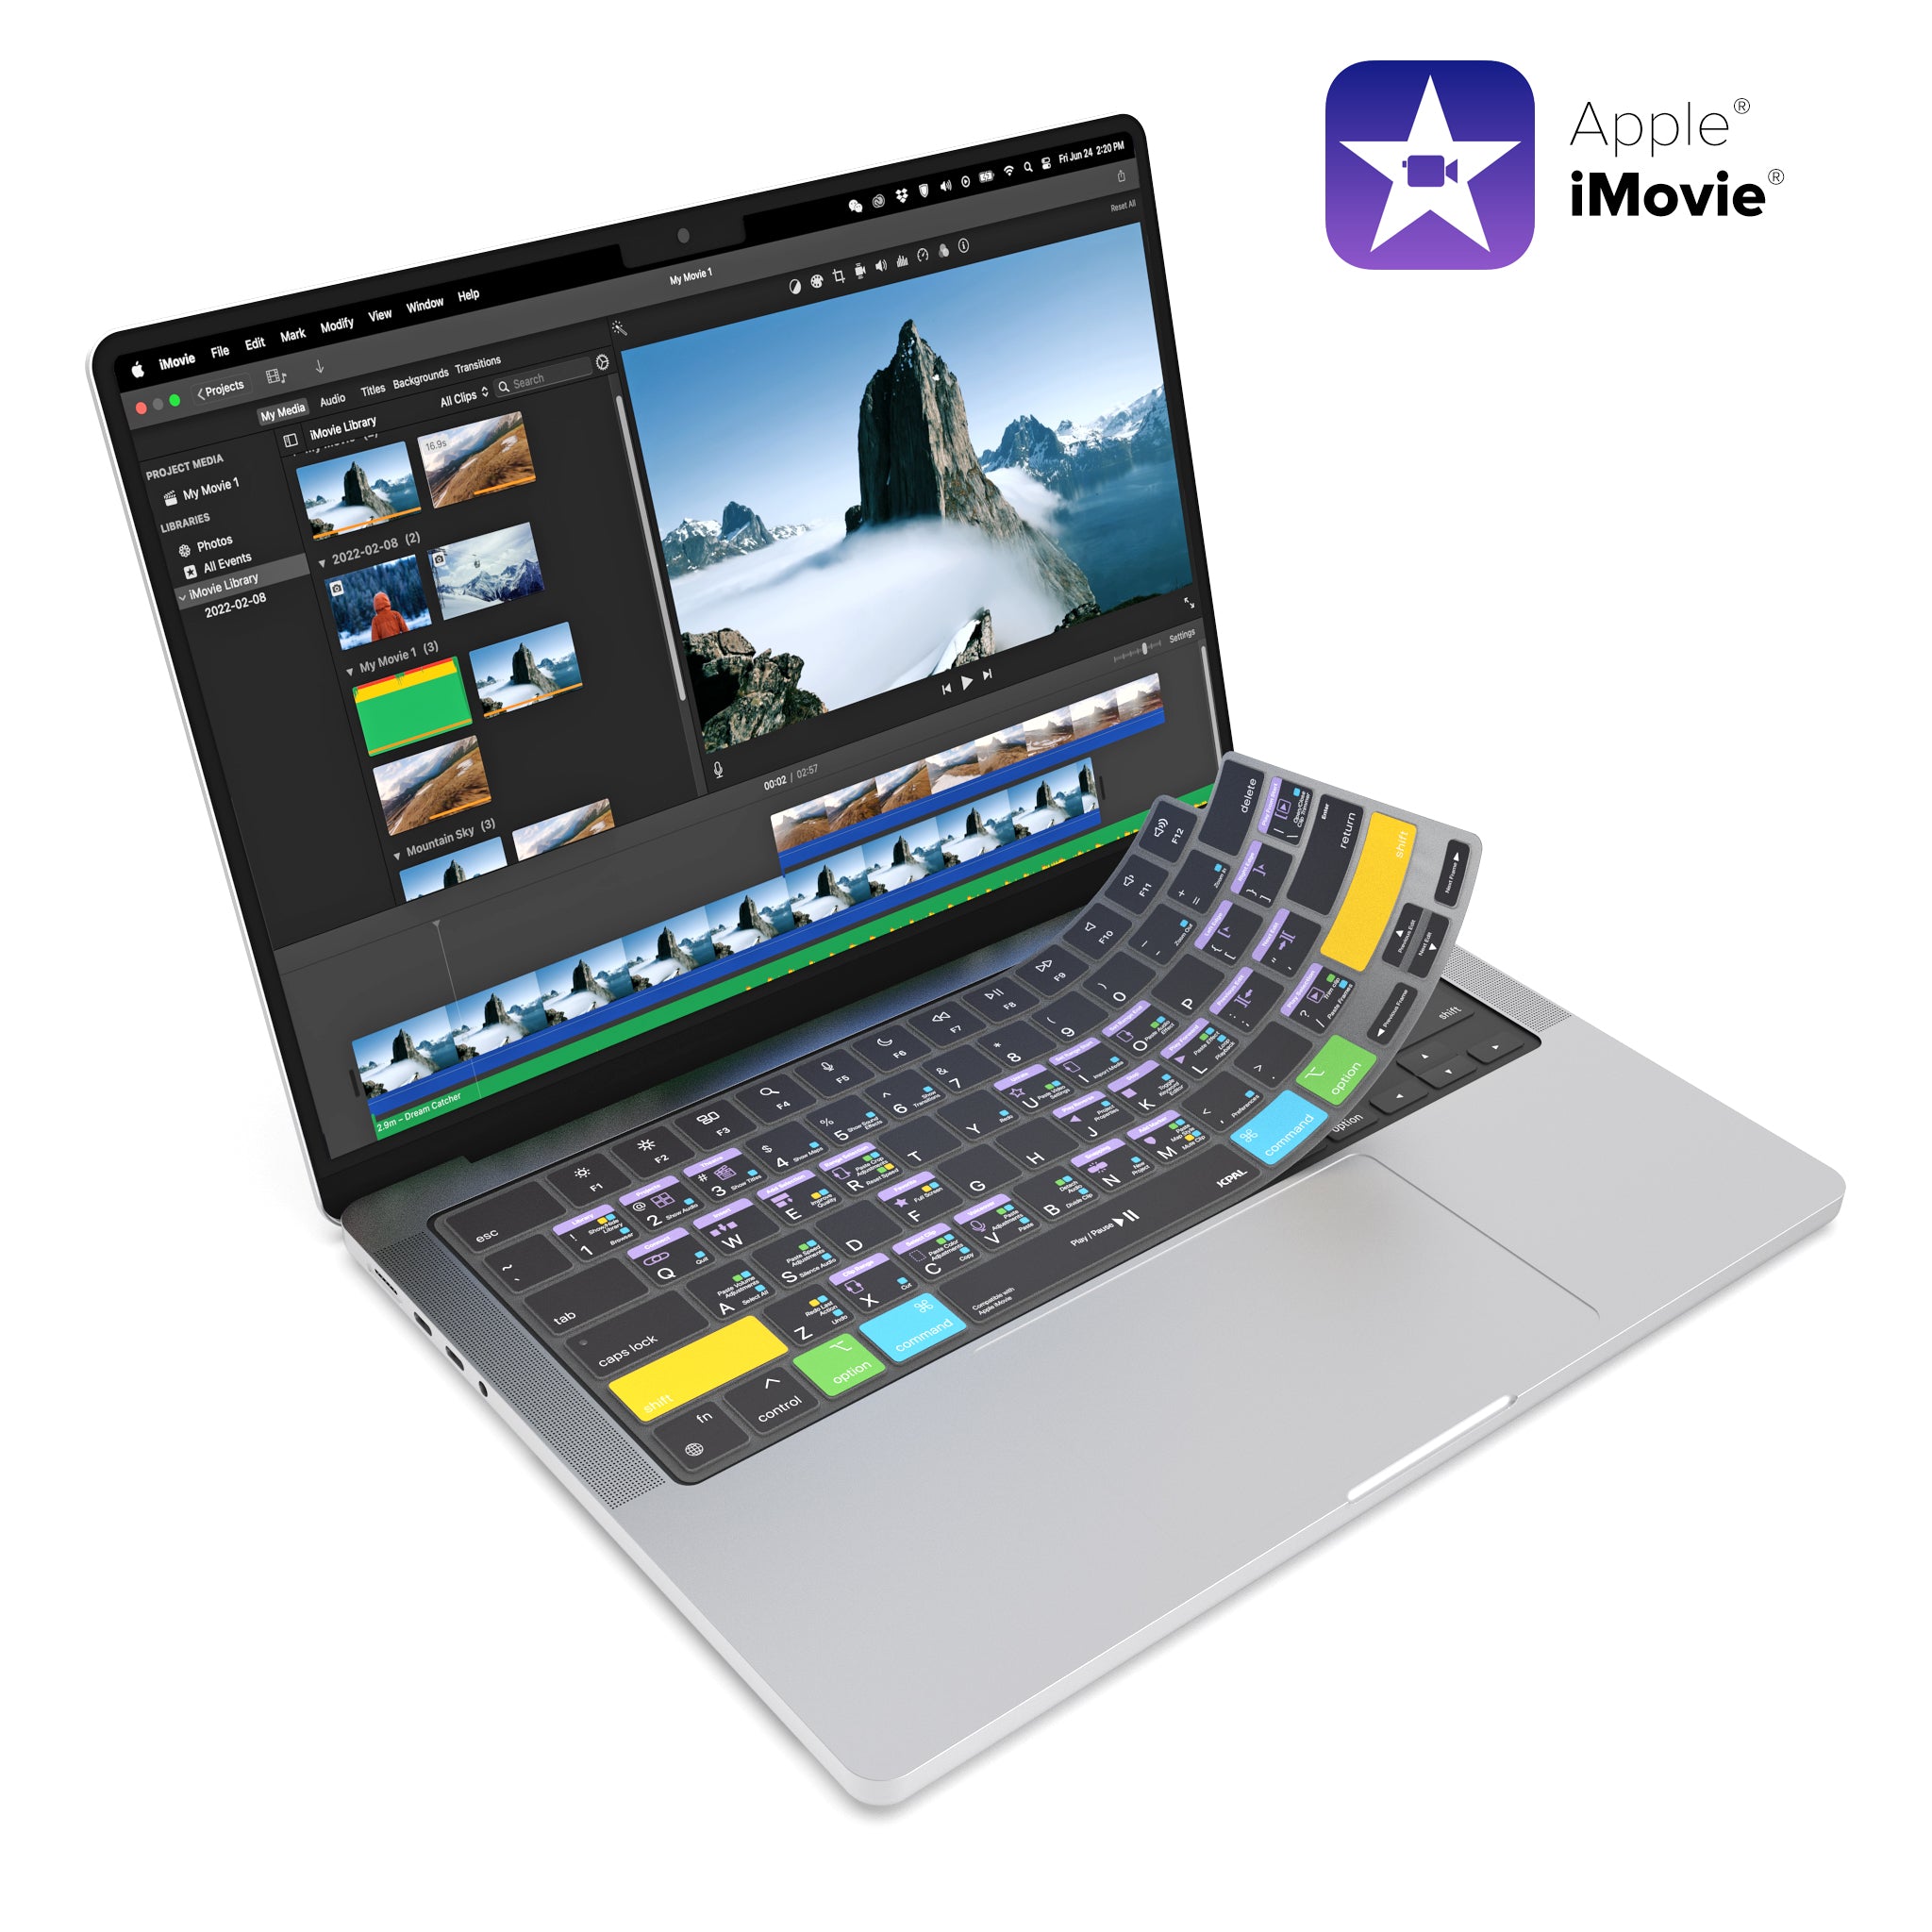 VerSkin   Apple iMovie Shortcut Keyboard Protector